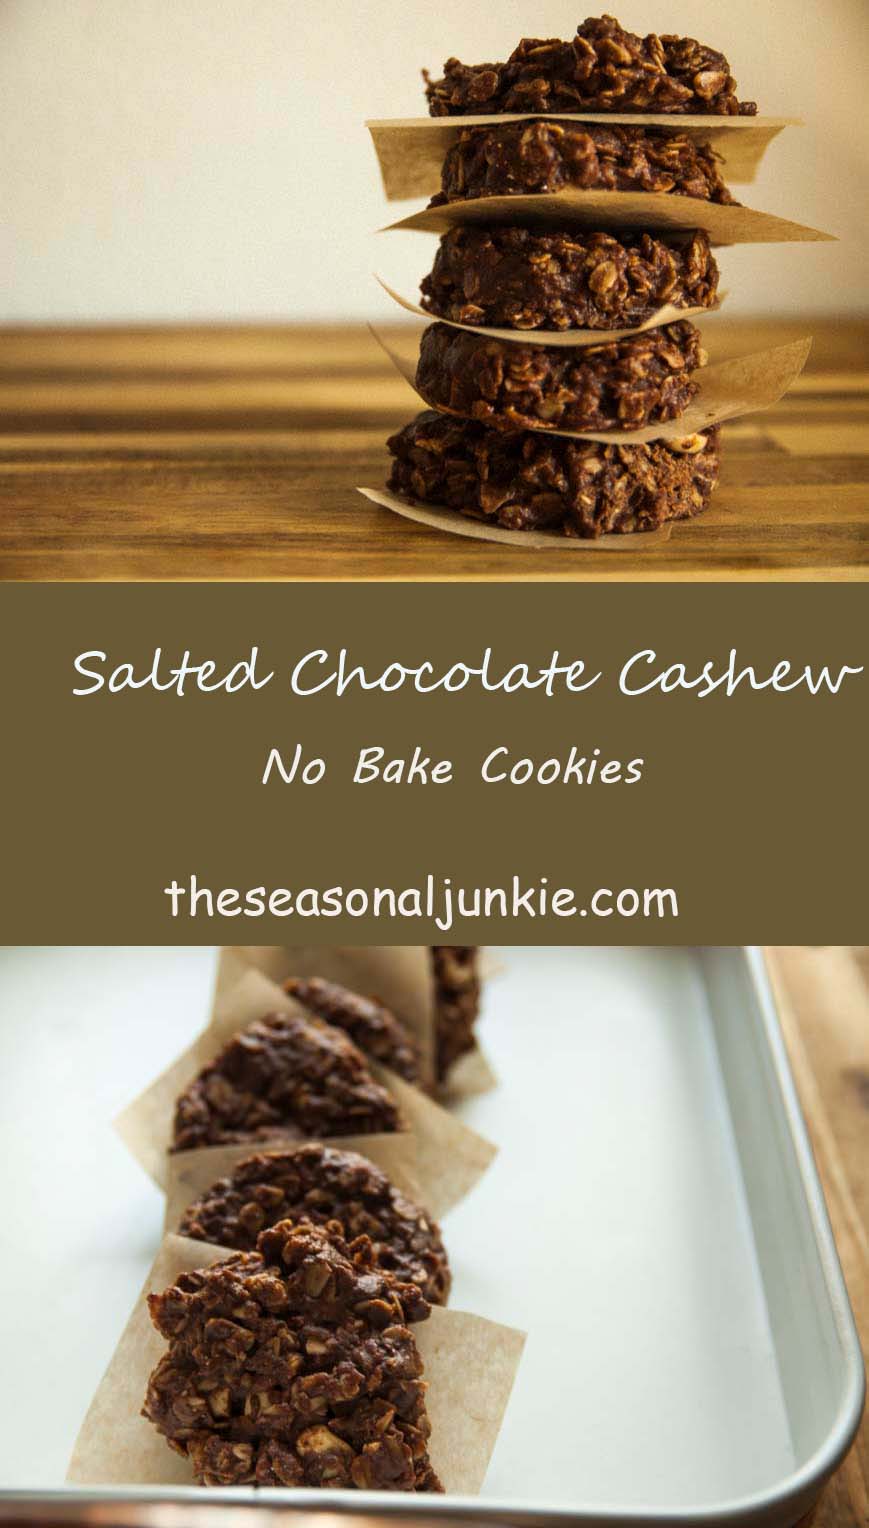 No Bake Cookies- The Seasonal Junkie